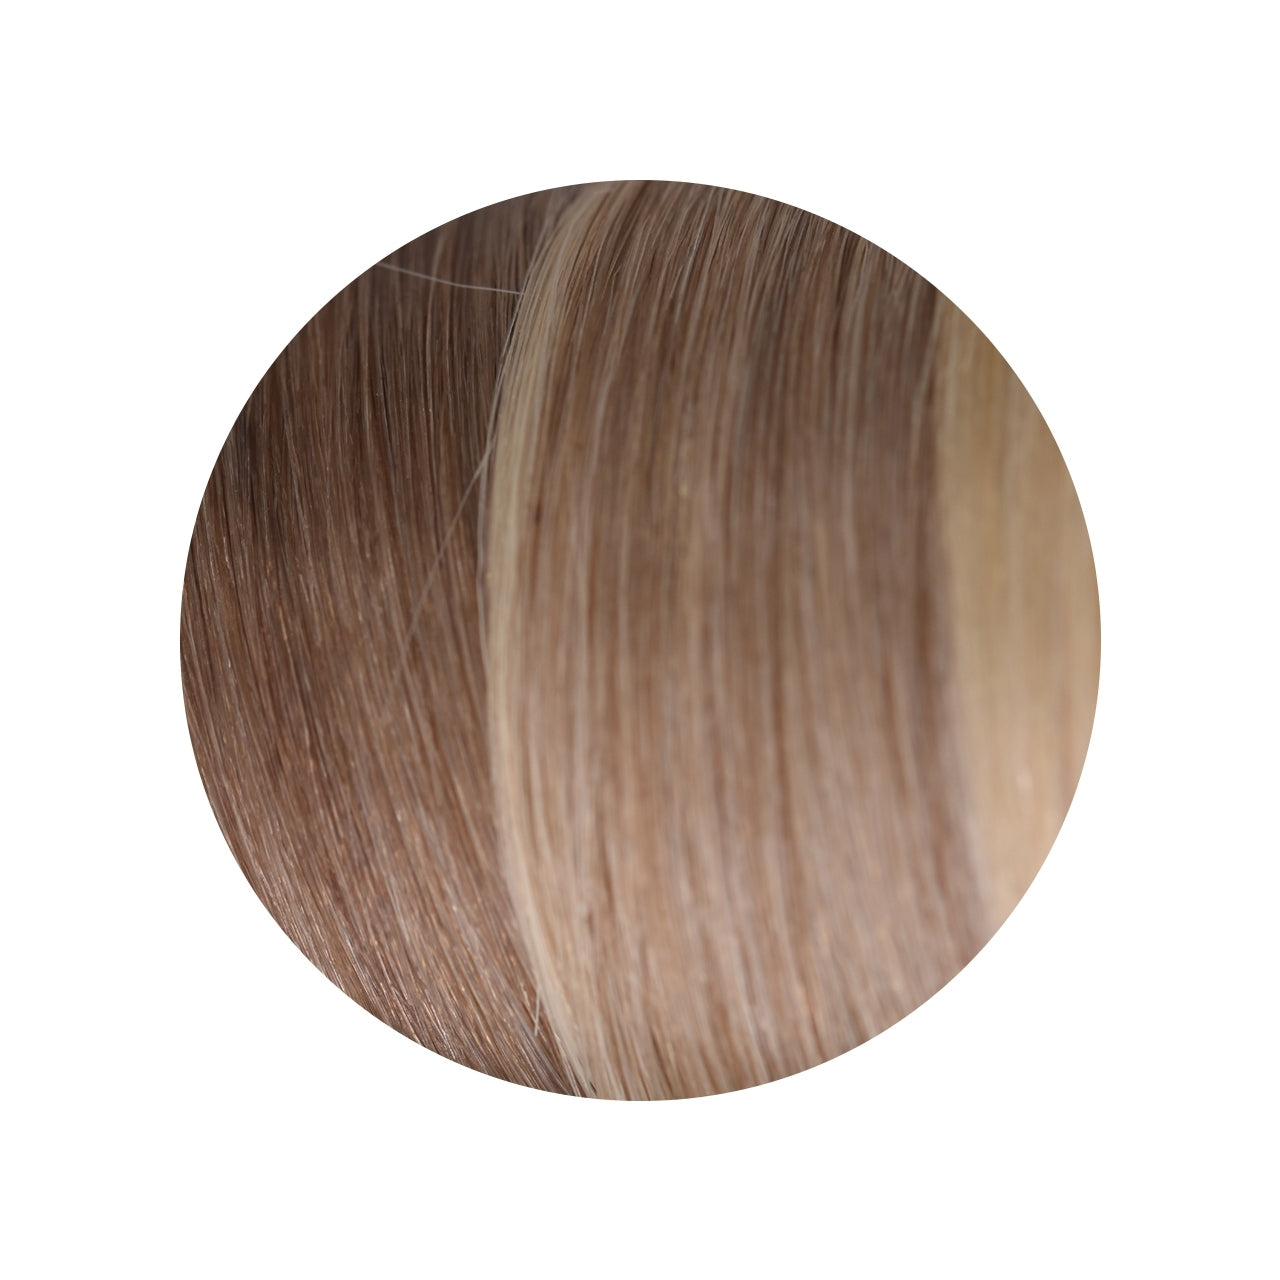 Ziploxx 20/613 - Light Ash Blonde to  Lightest Blonde 16 inch 10 Piece Pack